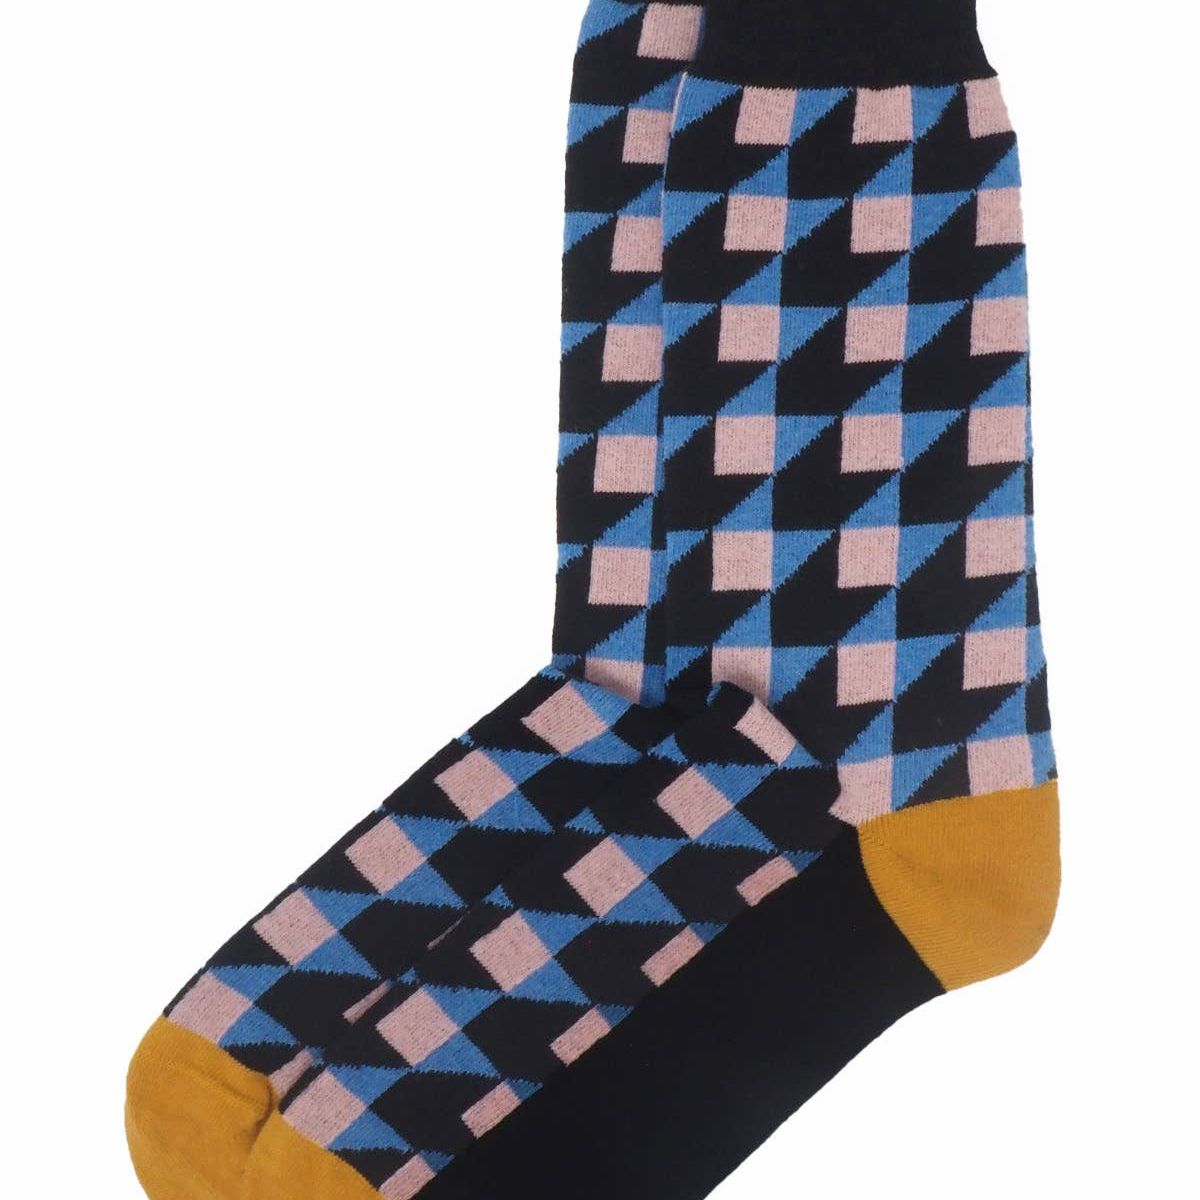 Dimensional Men's Recycled Socks - Eco Wonders